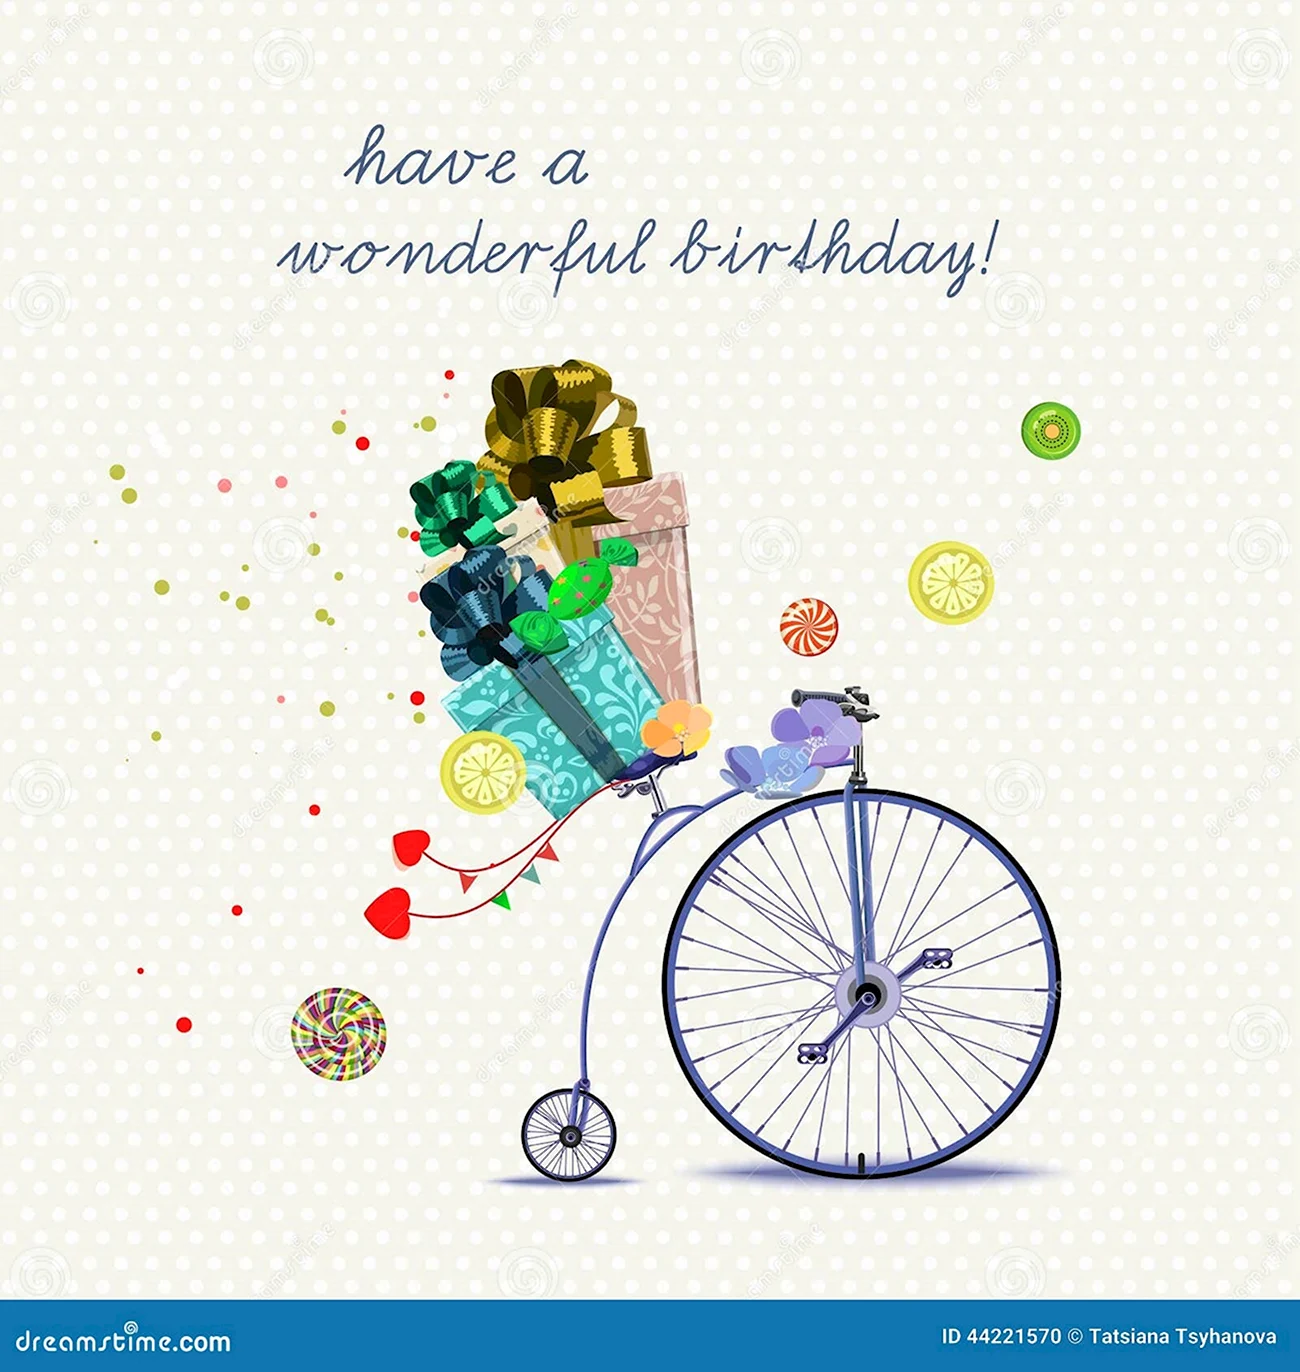 С днем рождения велосипедисту. Красивая картинка